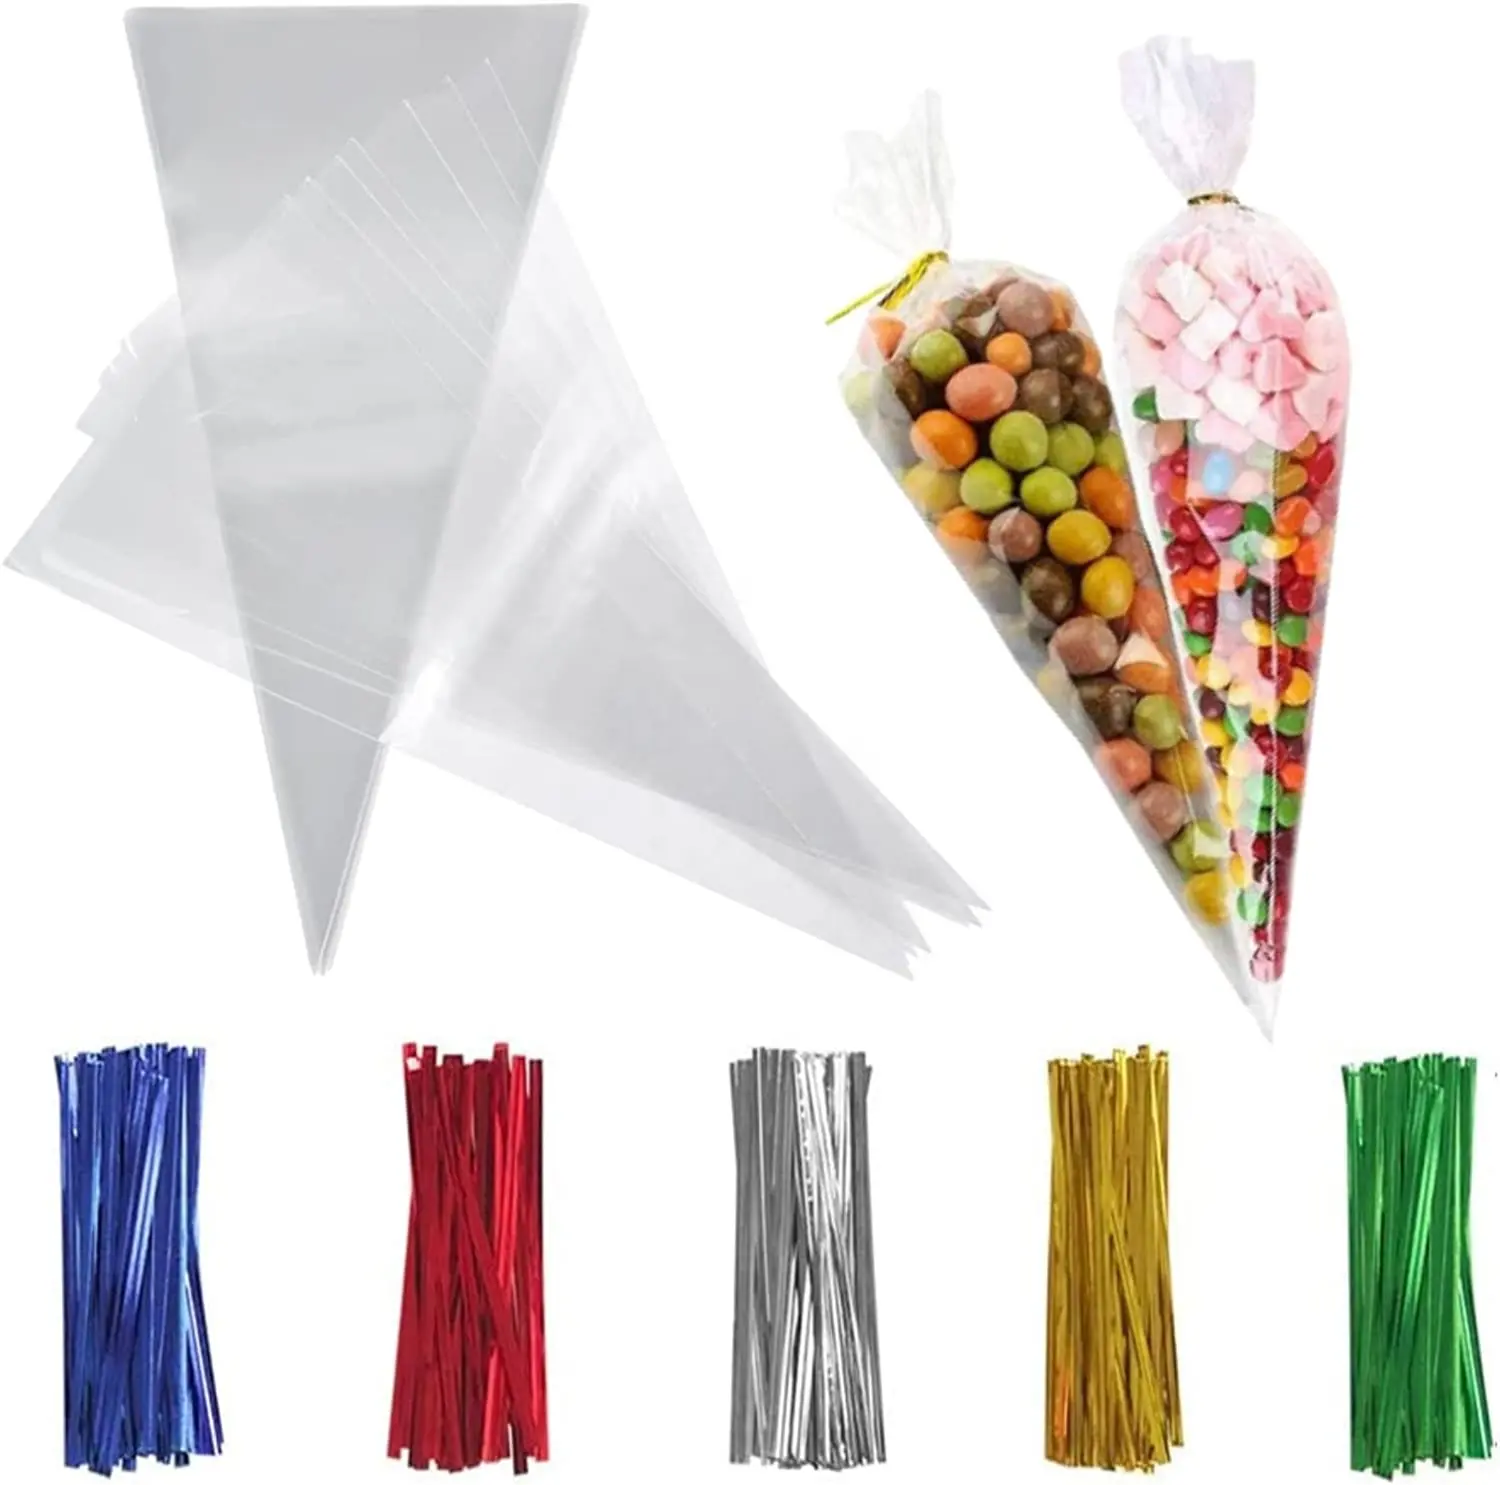 Bolsas de cono triangular transparentes BOPP, bolsas de plástico de celofán para palomitas de maíz dulces, con lazos giratorios de colores para fiesta, 13x25cm